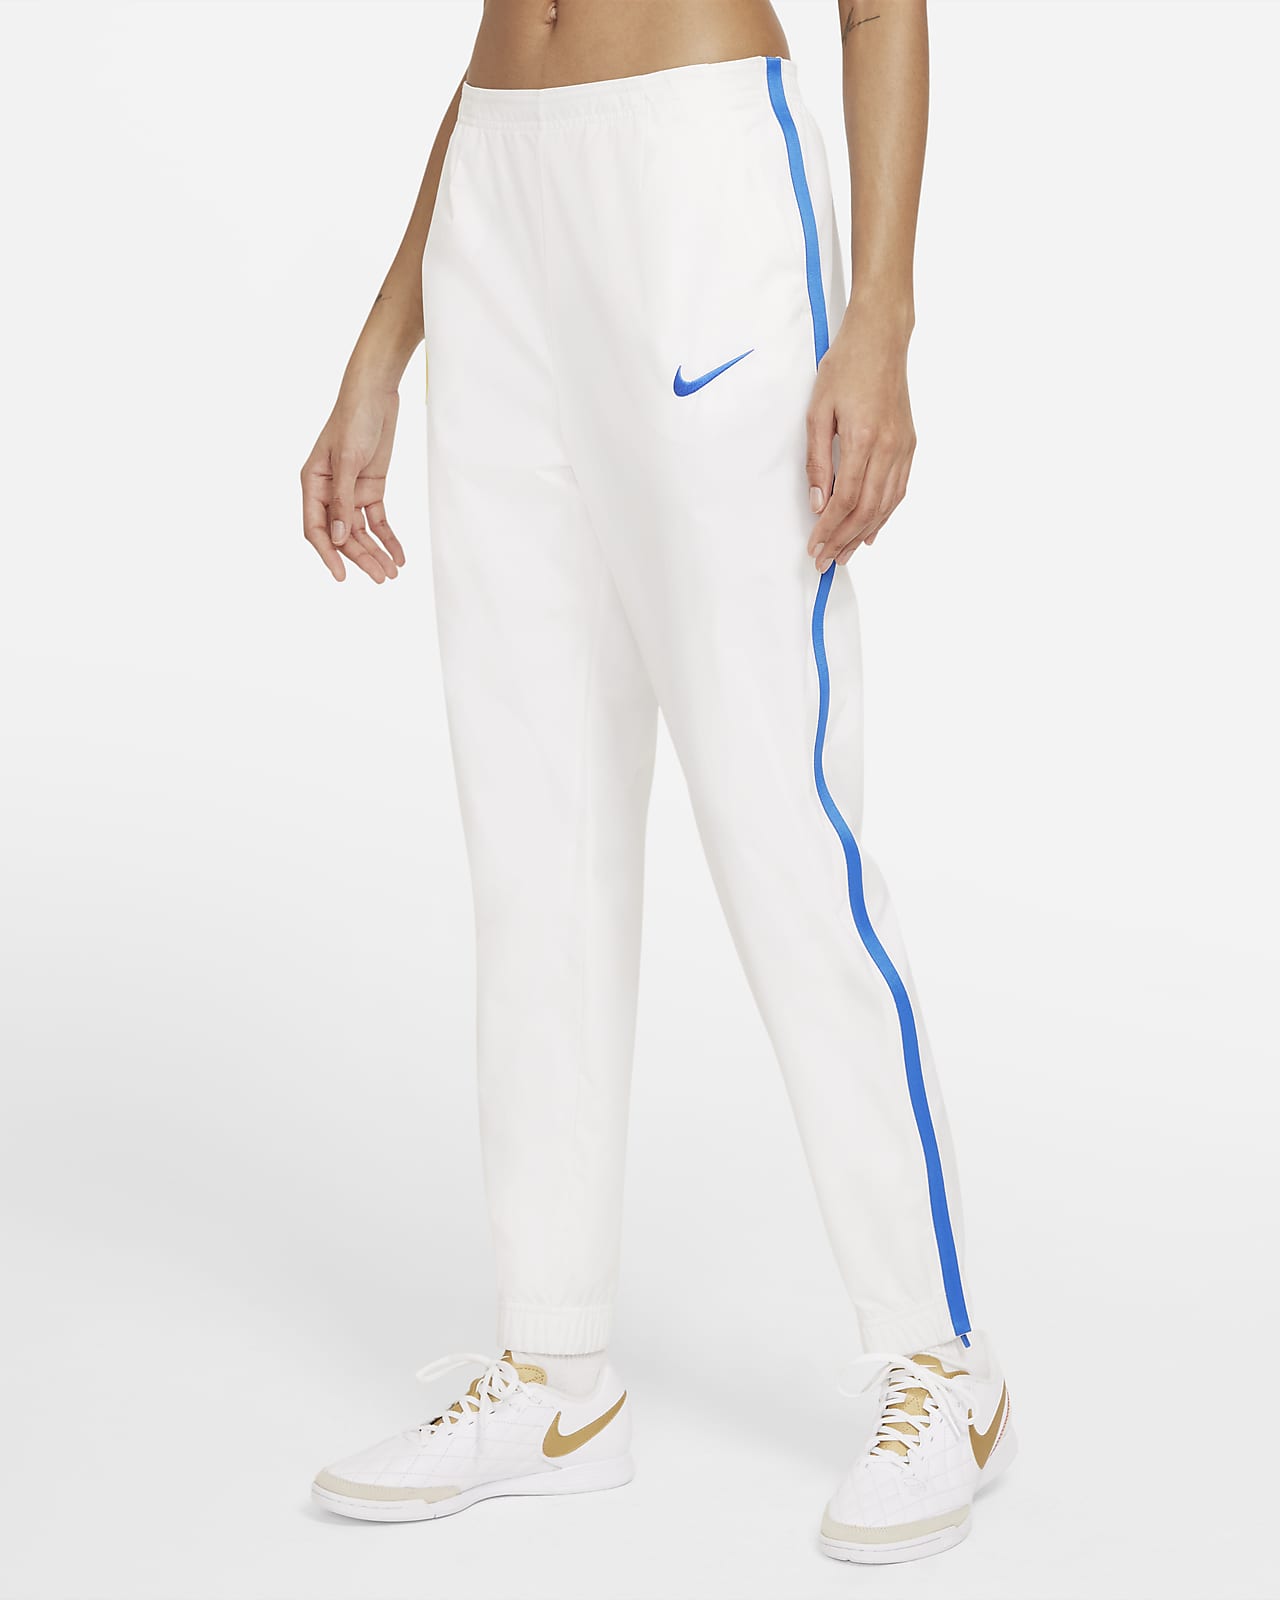 Inter Milan Women's Football Pants. Nike LU